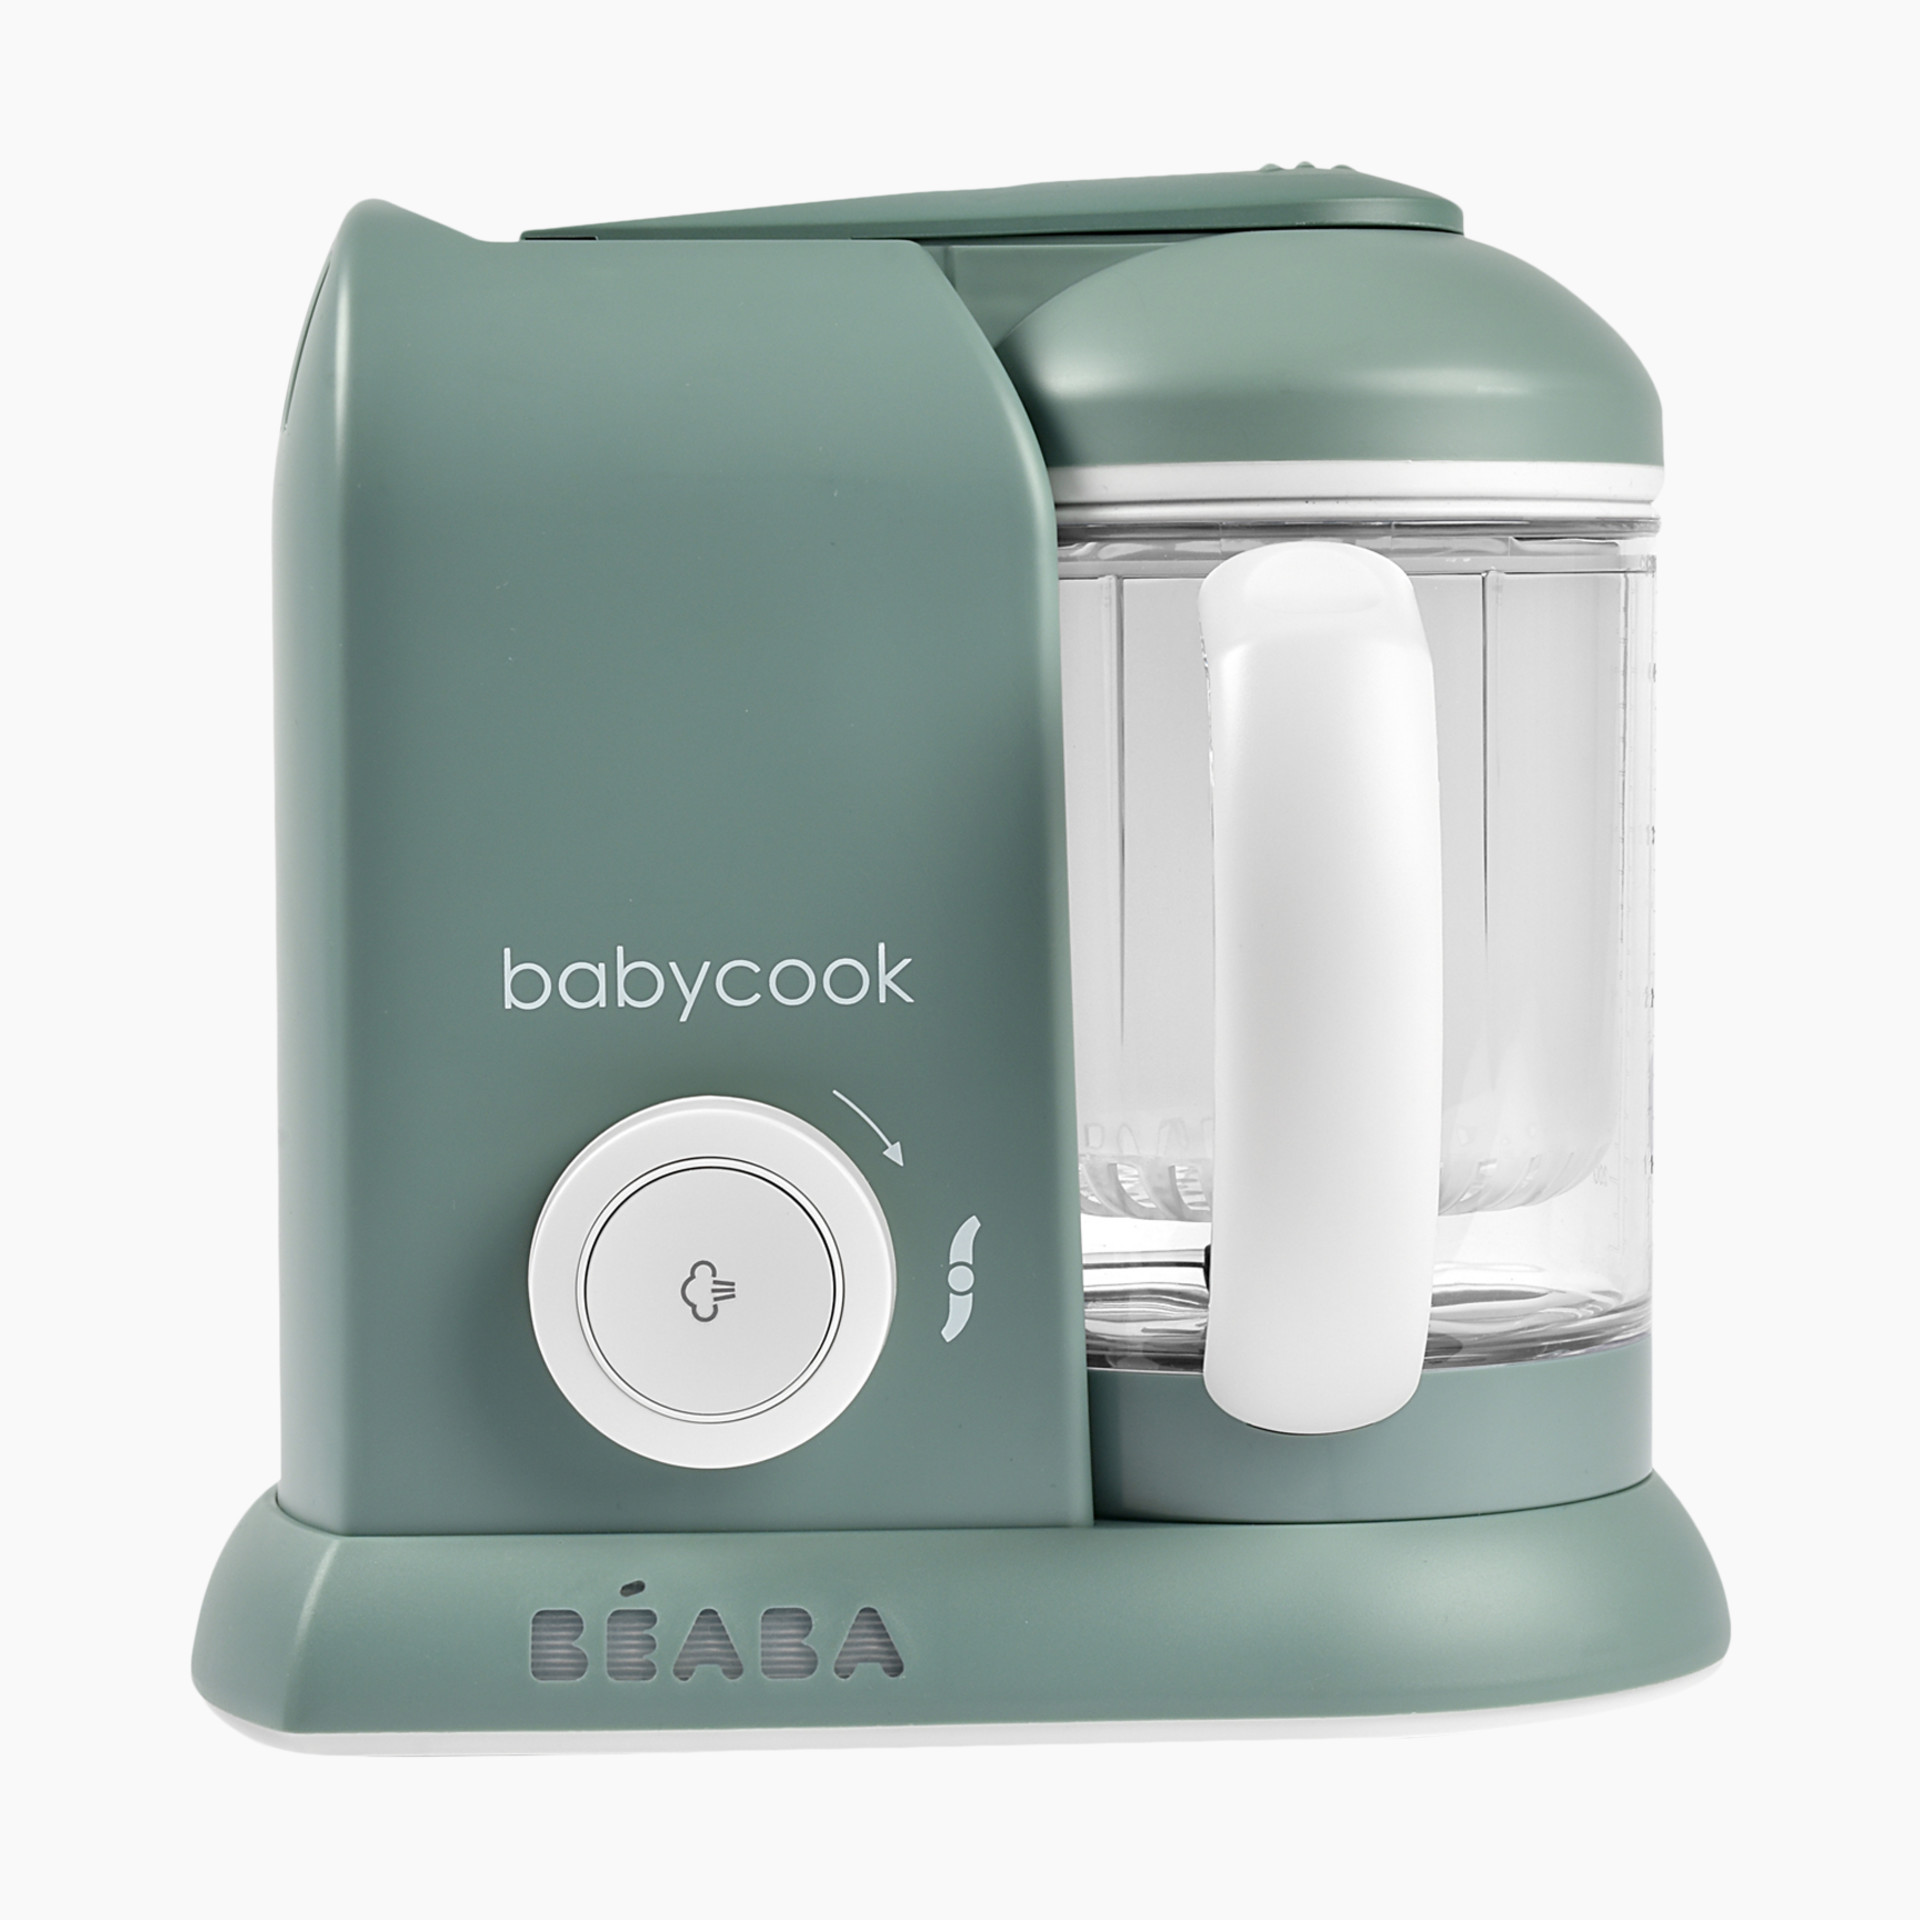 BEABA Babycook Neo Baby Food Maker in Cloud | Open Box